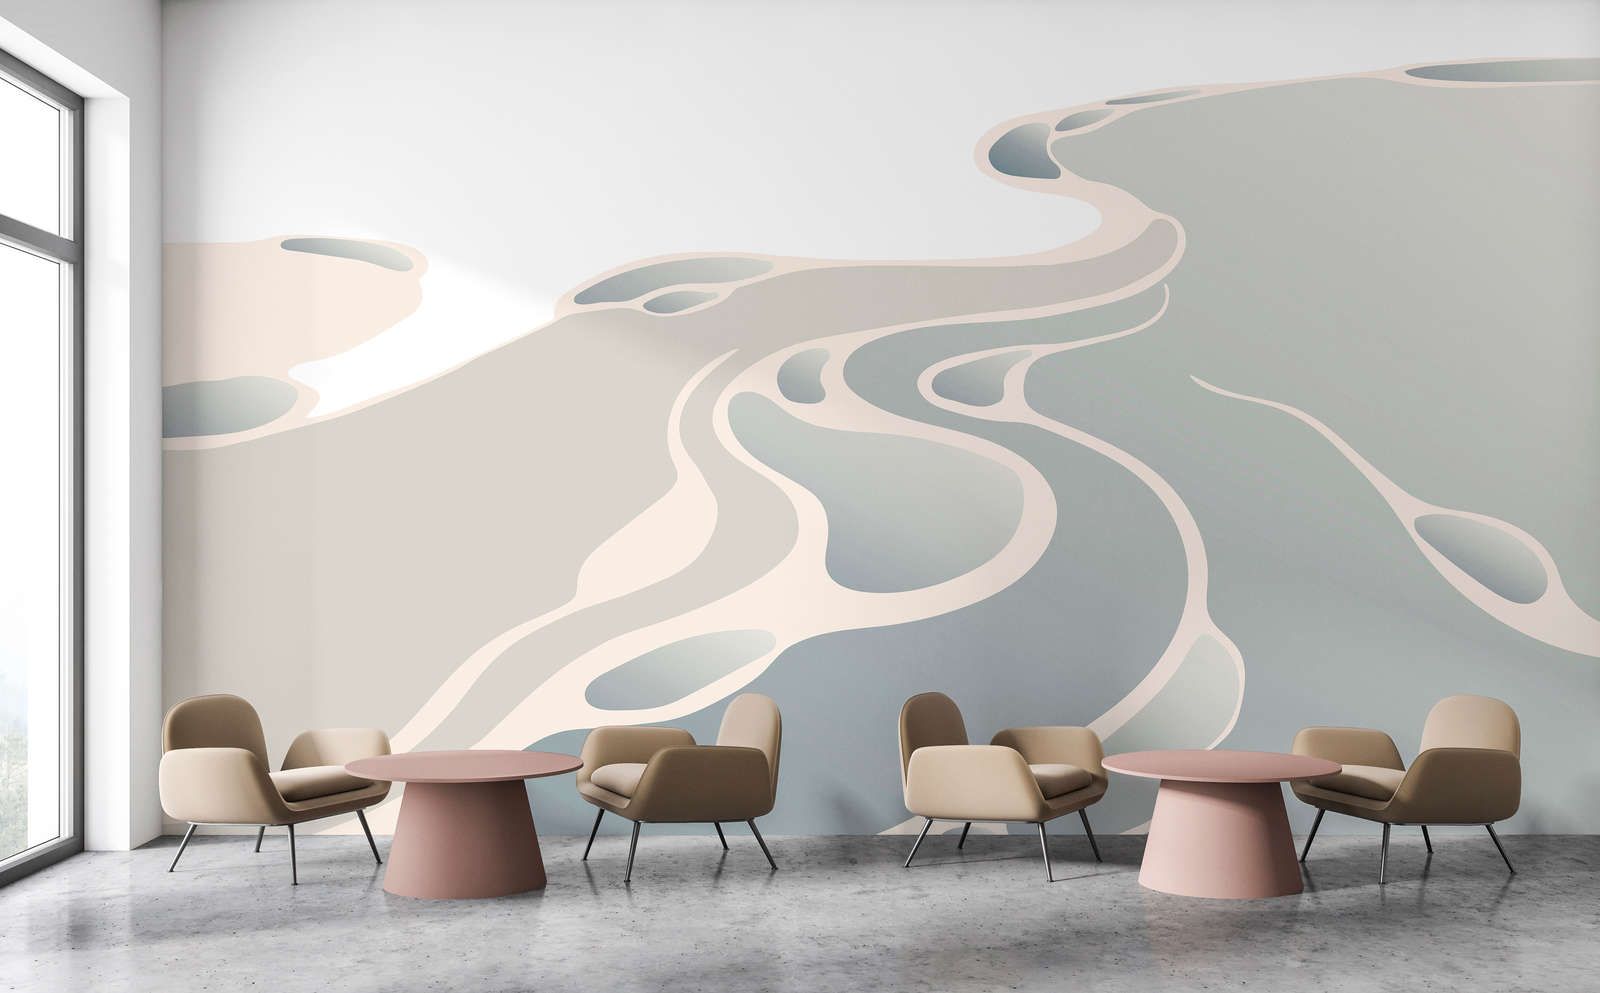             Digital behang »delta« - Abstract woestijnlandschap - Soepele, licht glanzende premium vliesstof
        